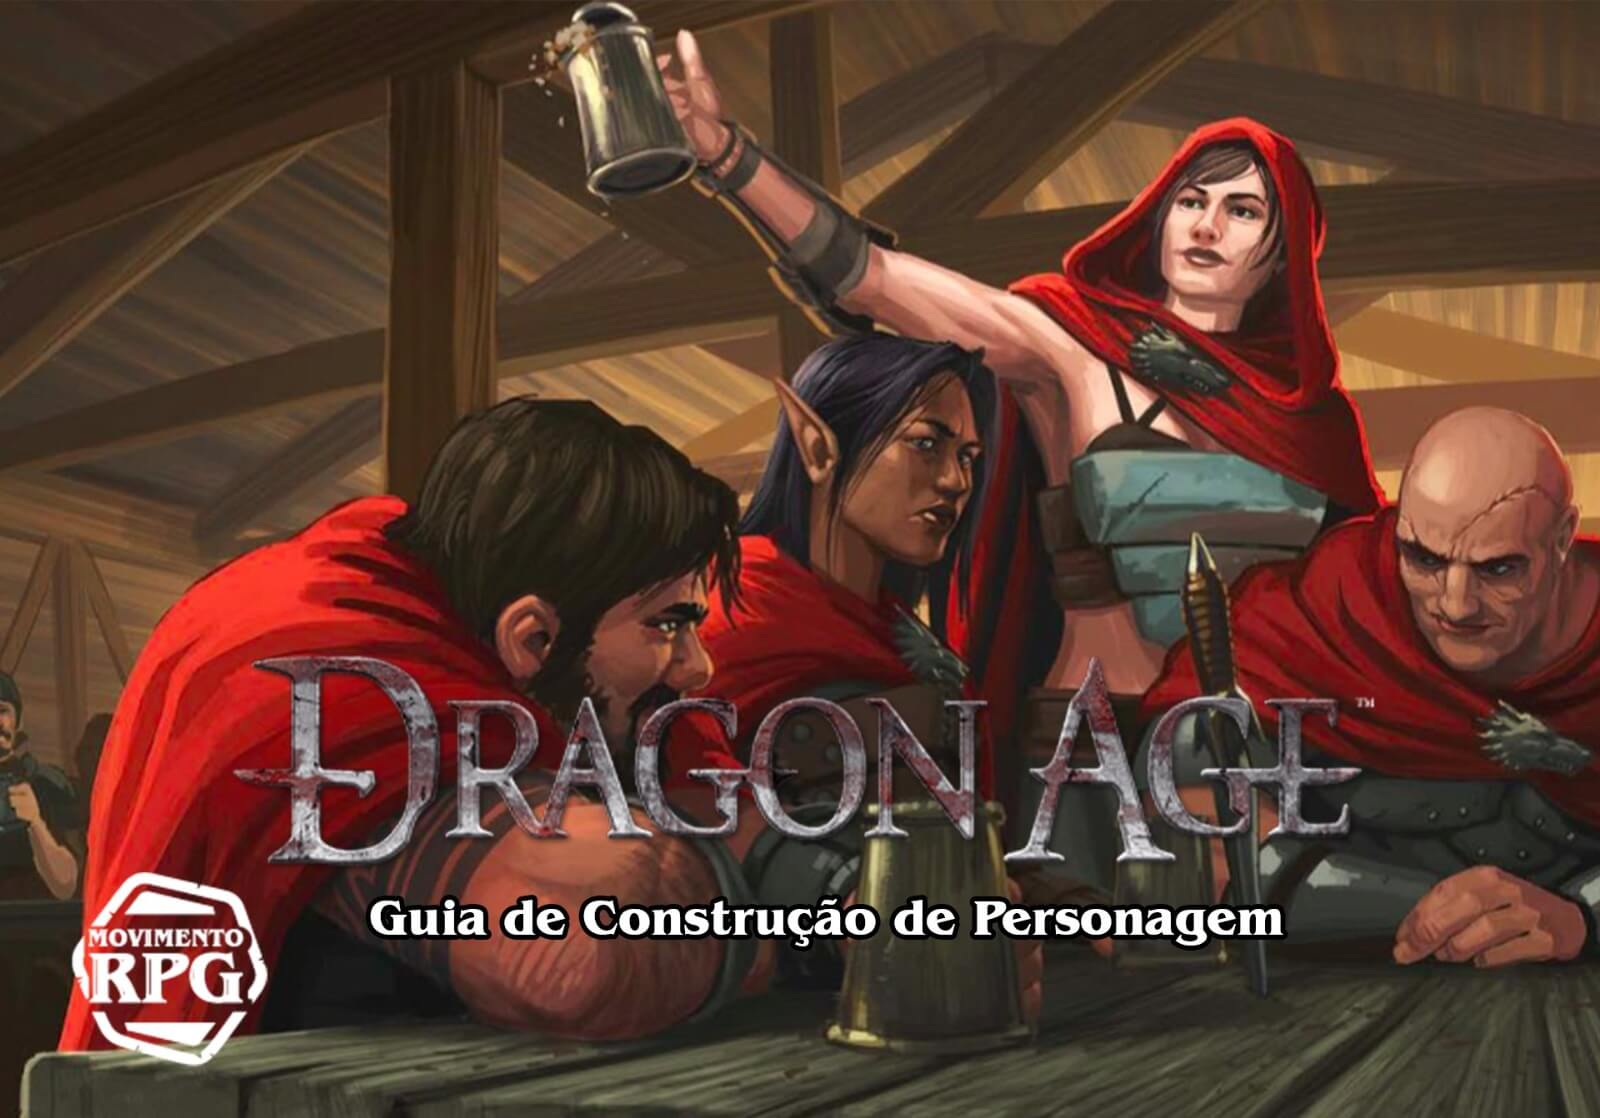 Guia de Construção de Personagem – Dragon Age RPG